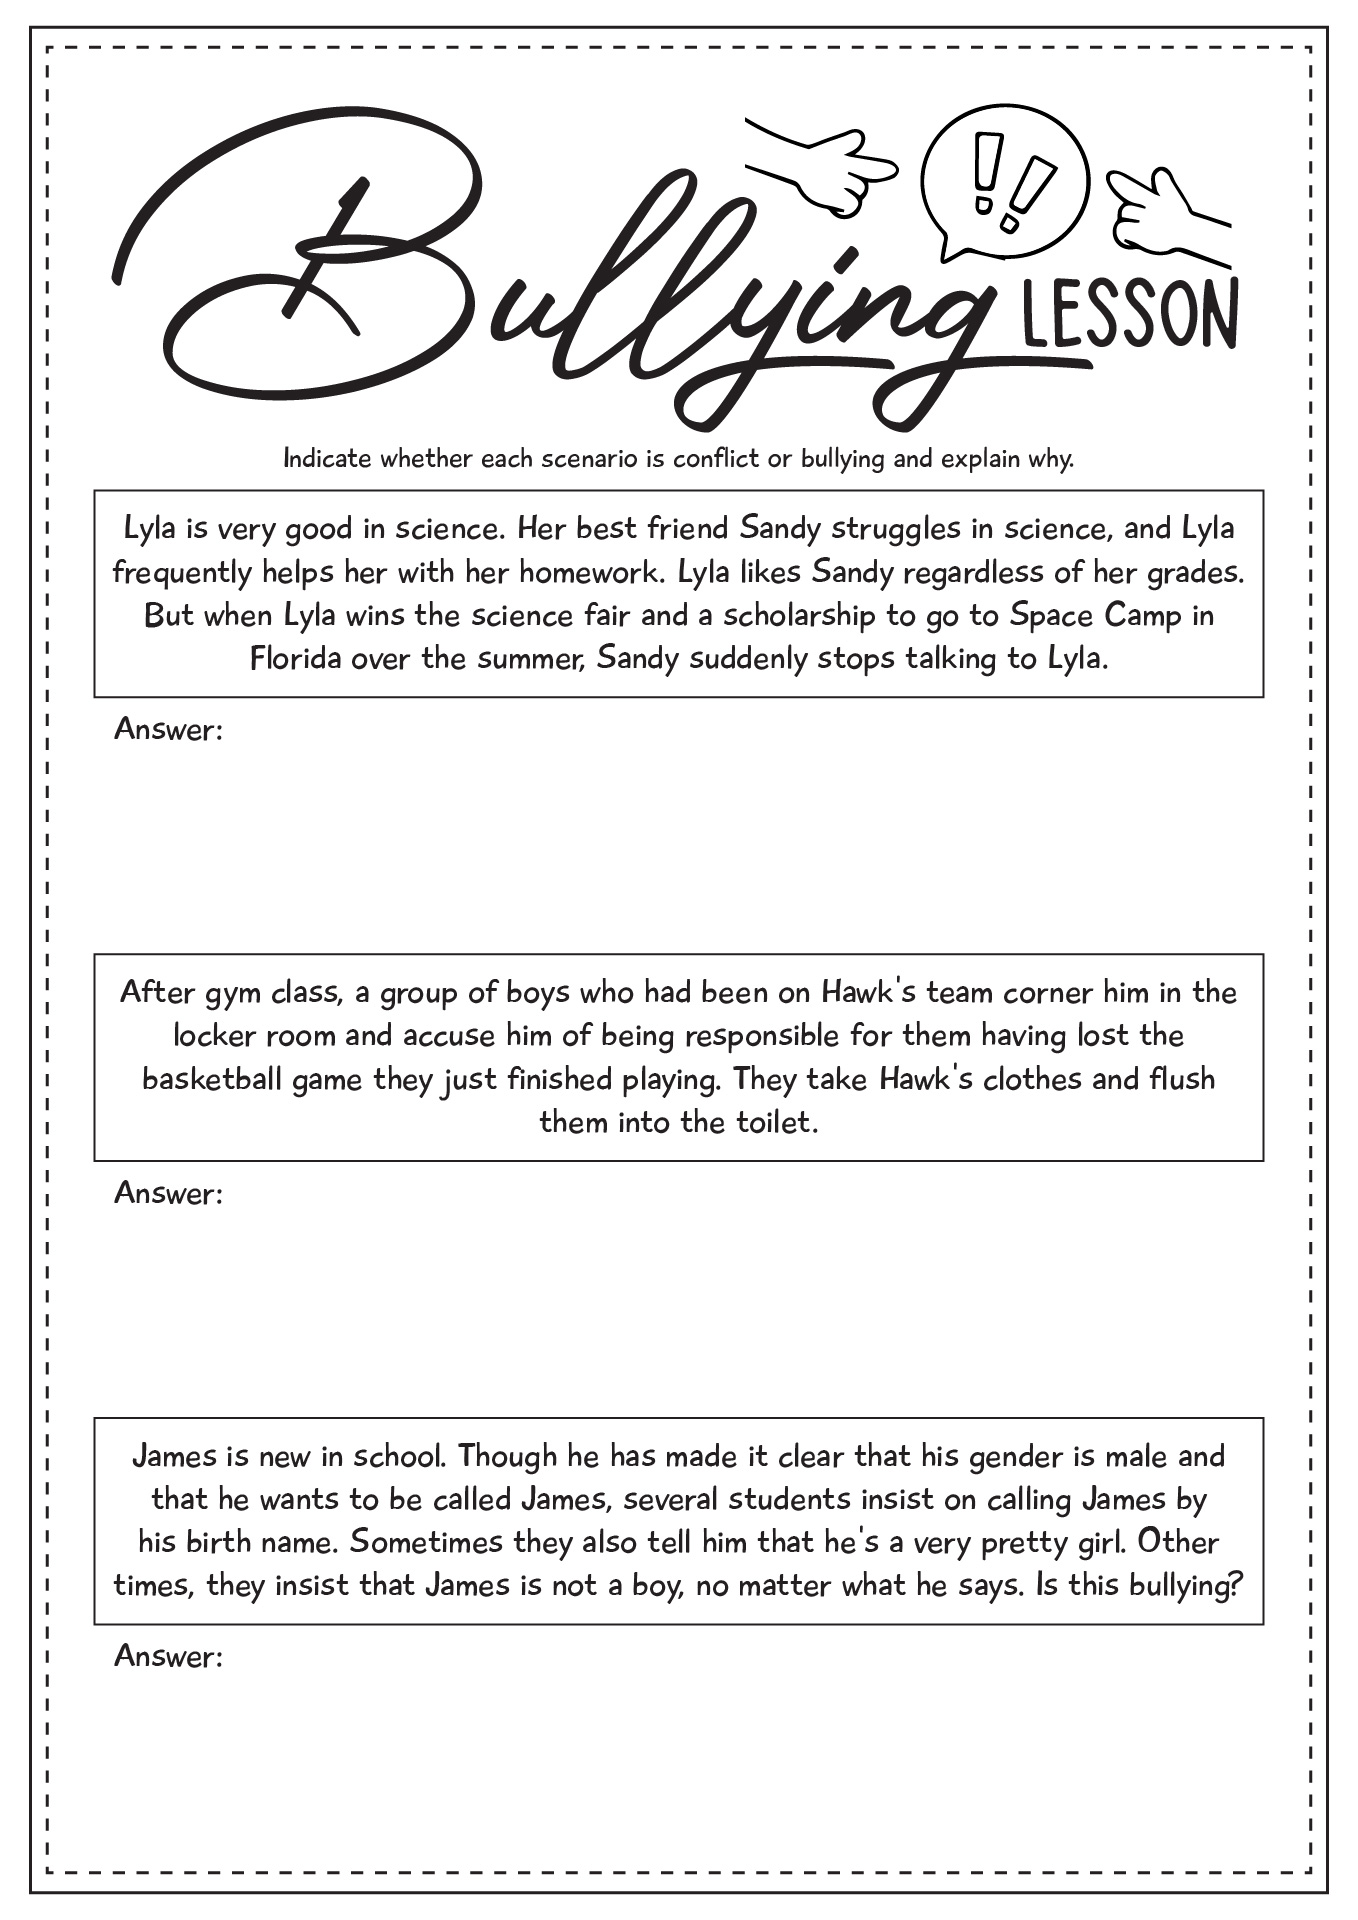 Bullying Lesson Worksheet